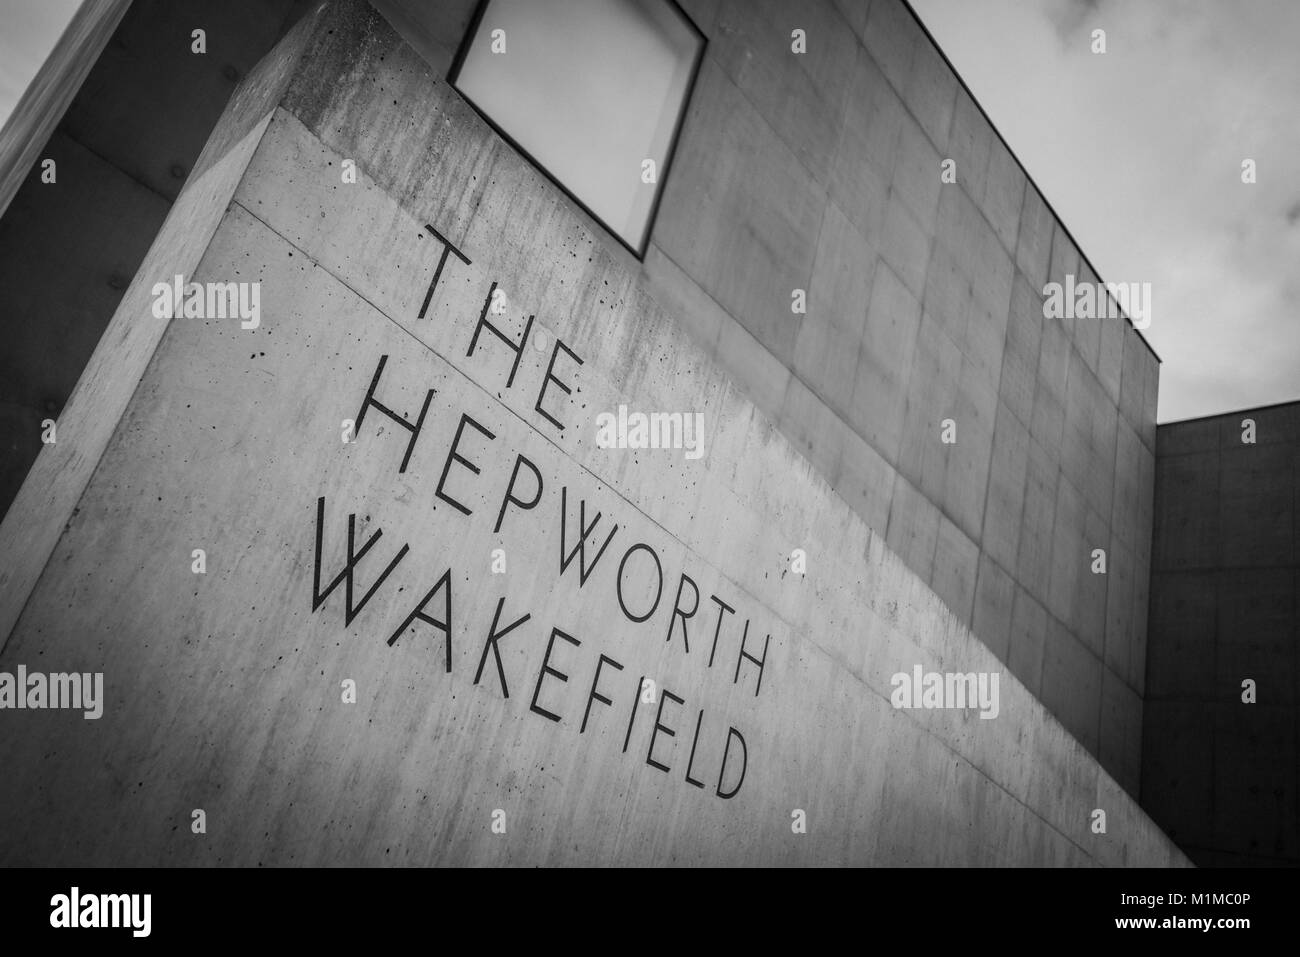 Bianco e nero immagini astratte dell'esterno del Museo Hepworth, Wakefield, Yorkshire PHILLIP ROBERTS Foto Stock